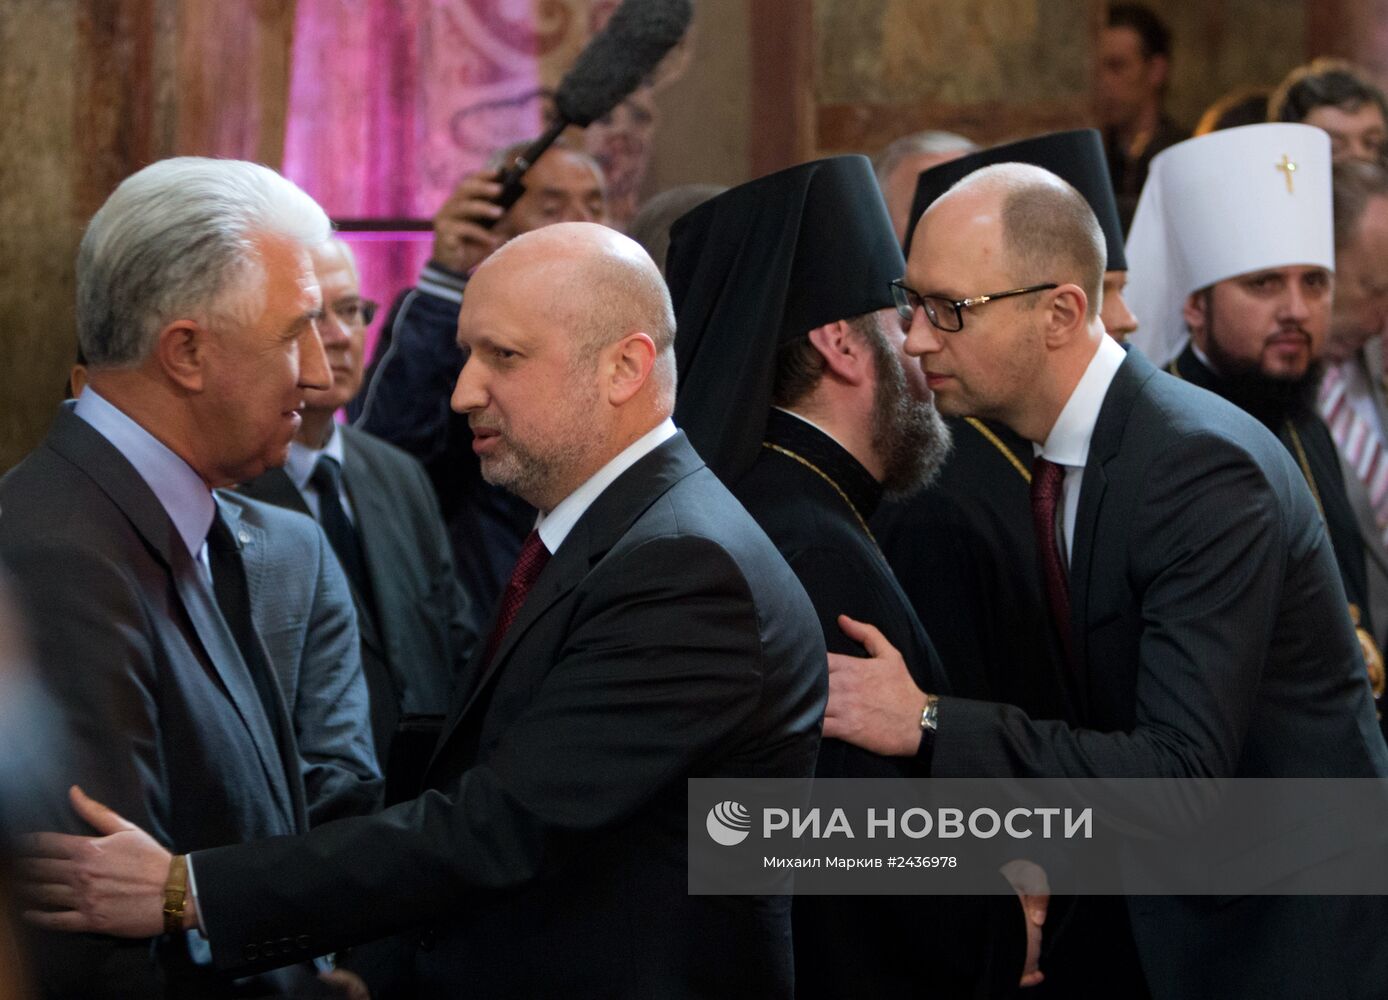 Совместная молитва за Украину состоялась в канун выборов